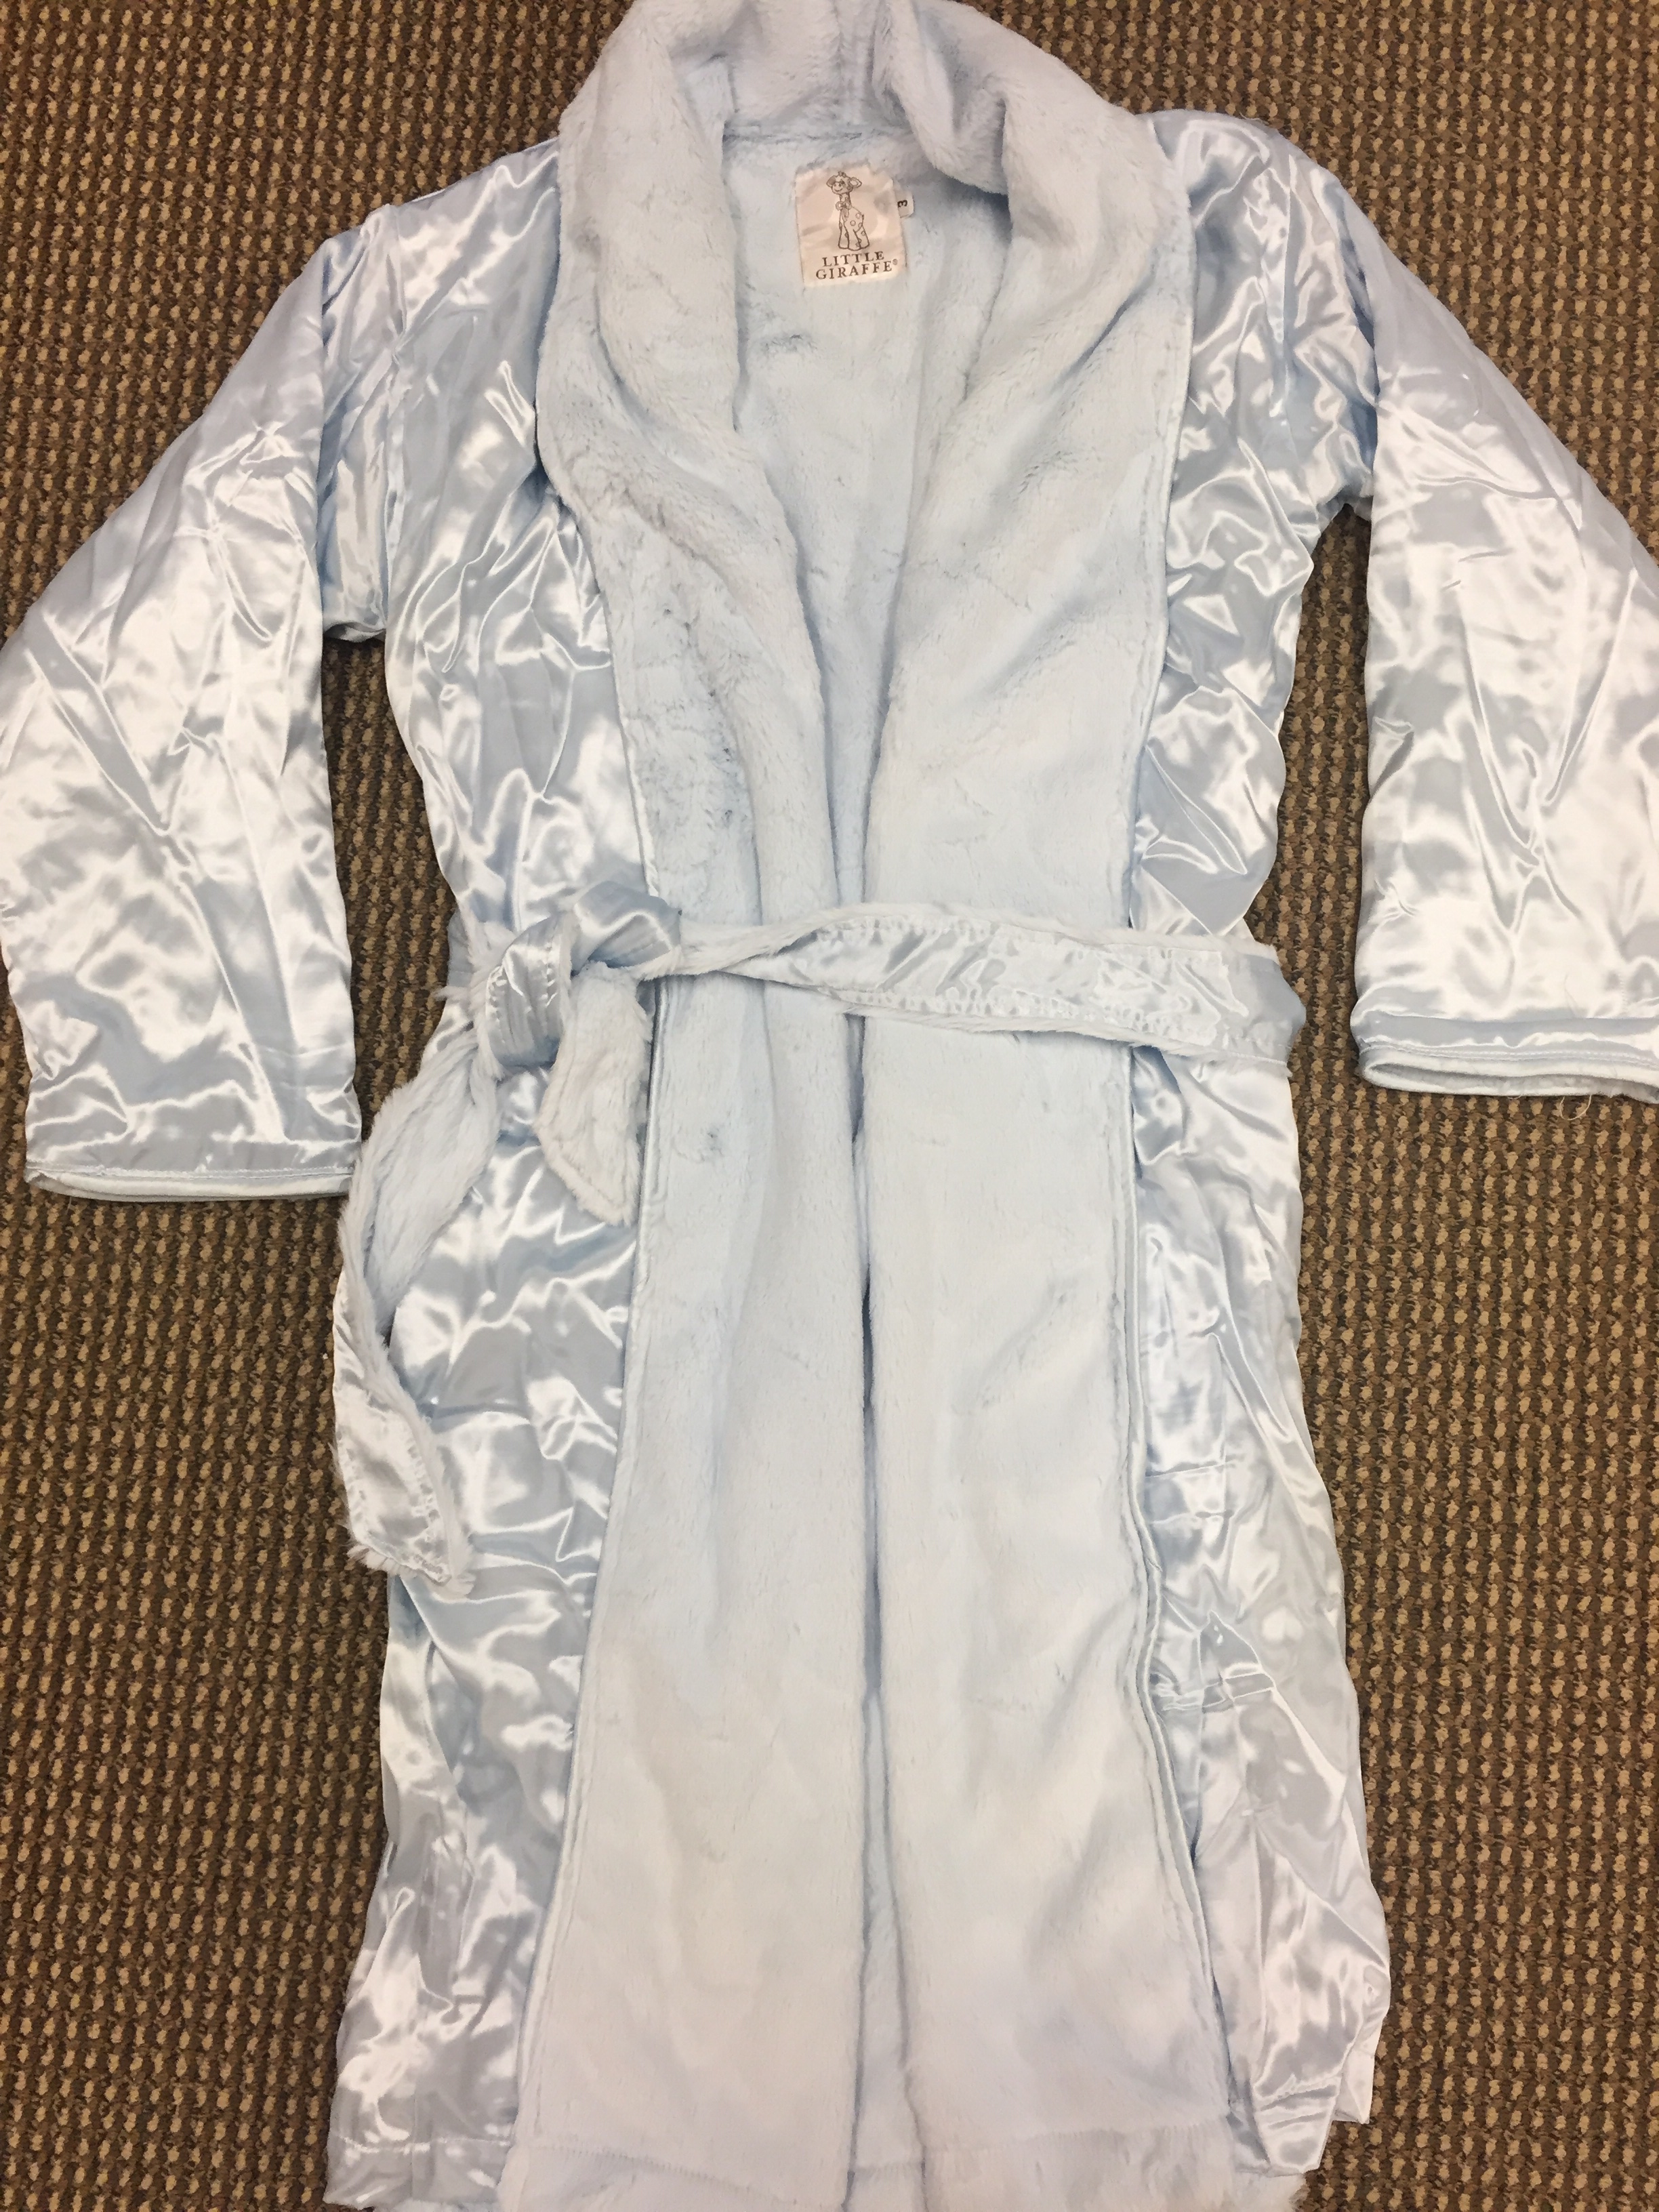 Luxe Satin children's robes